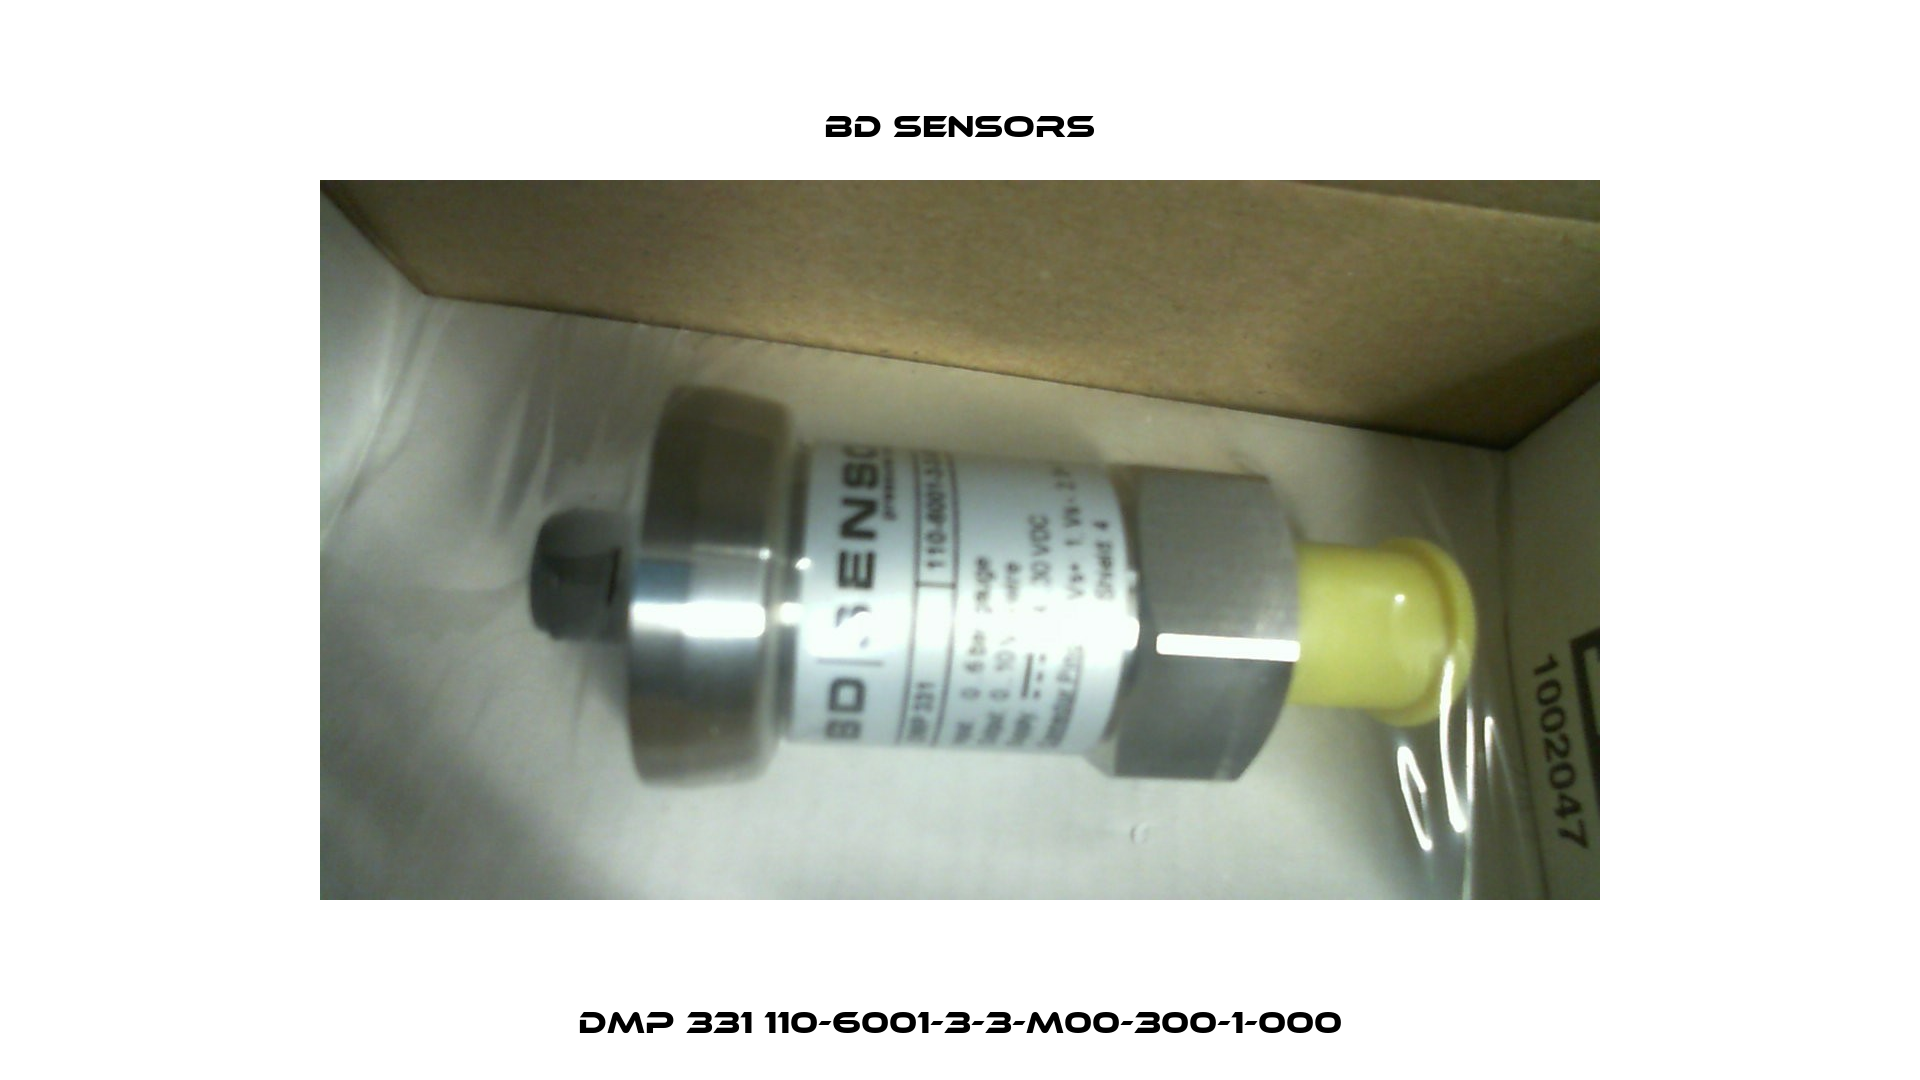 DMP 331 110-6001-3-3-M00-300-1-000 Bd Sensors